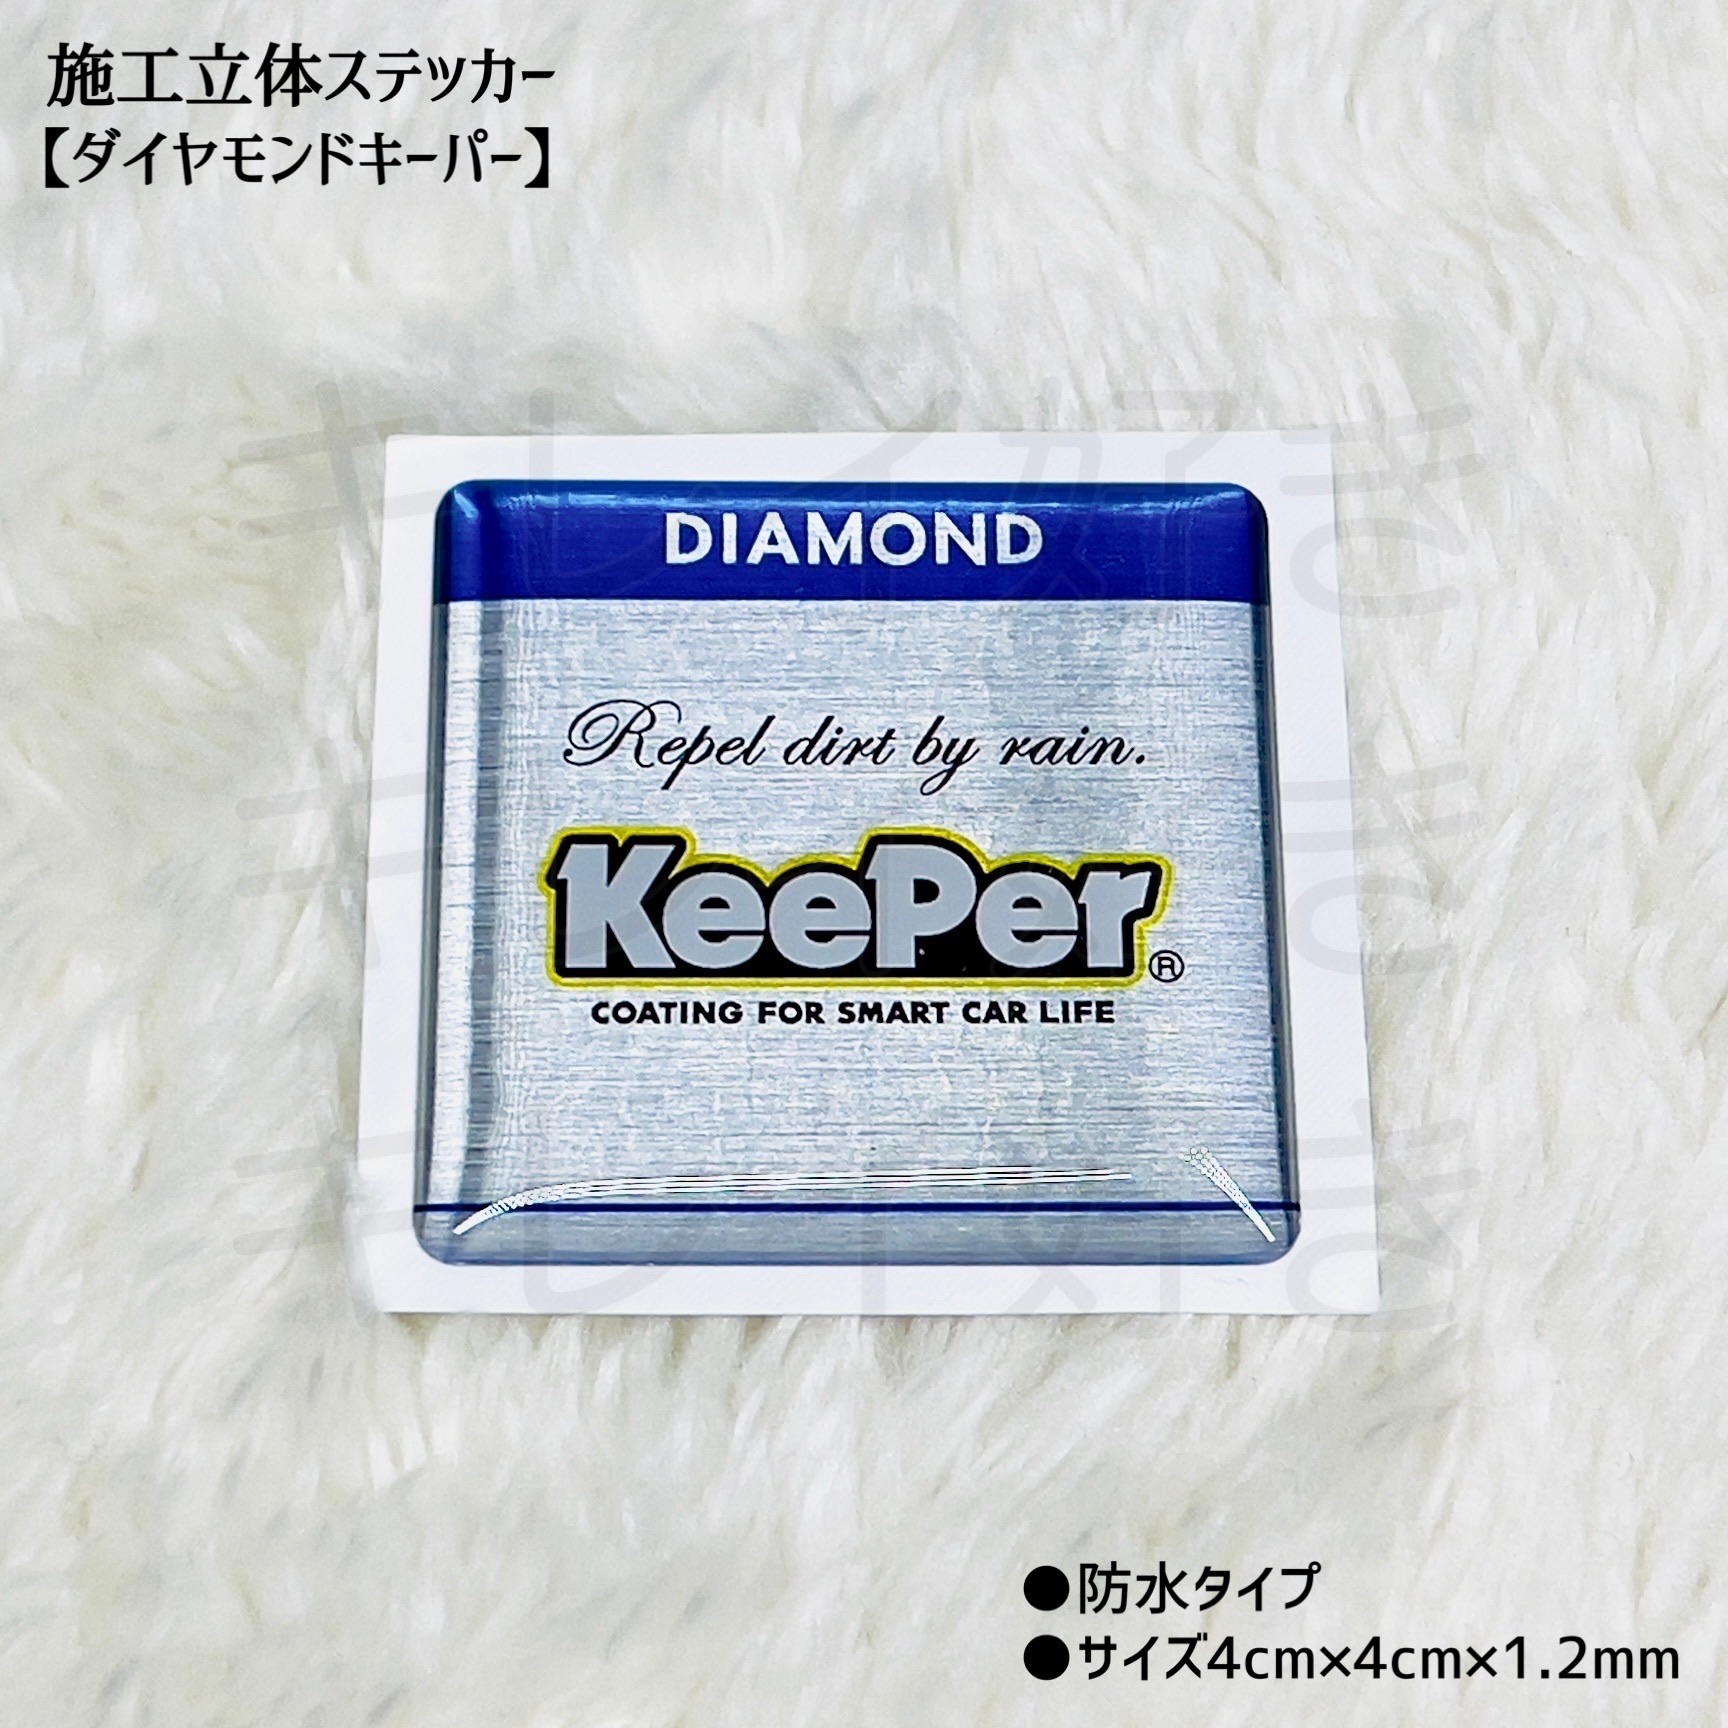 KeePer Wダイヤモンドキーパー ステッカー